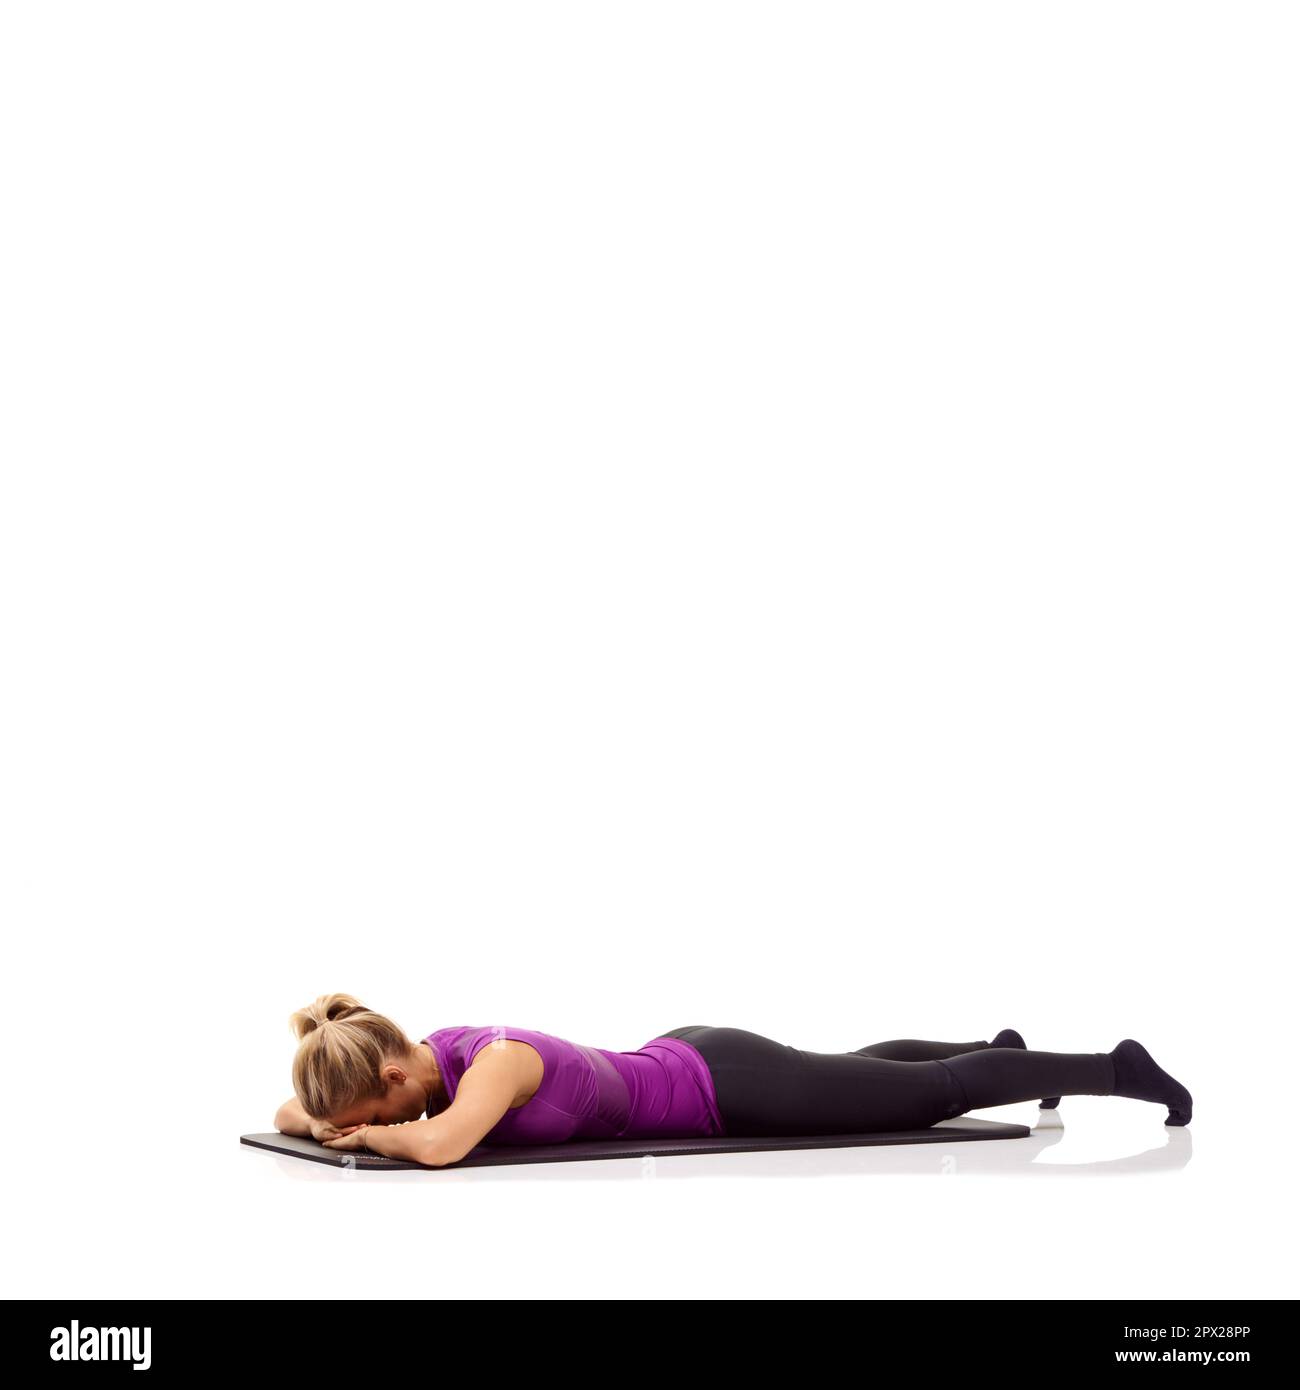 Préparation mentalement pour un entraînement. Une jeune femme couché face vers le bas sur son tapis d'exercice et renforçant ses fessiers. Banque D'Images